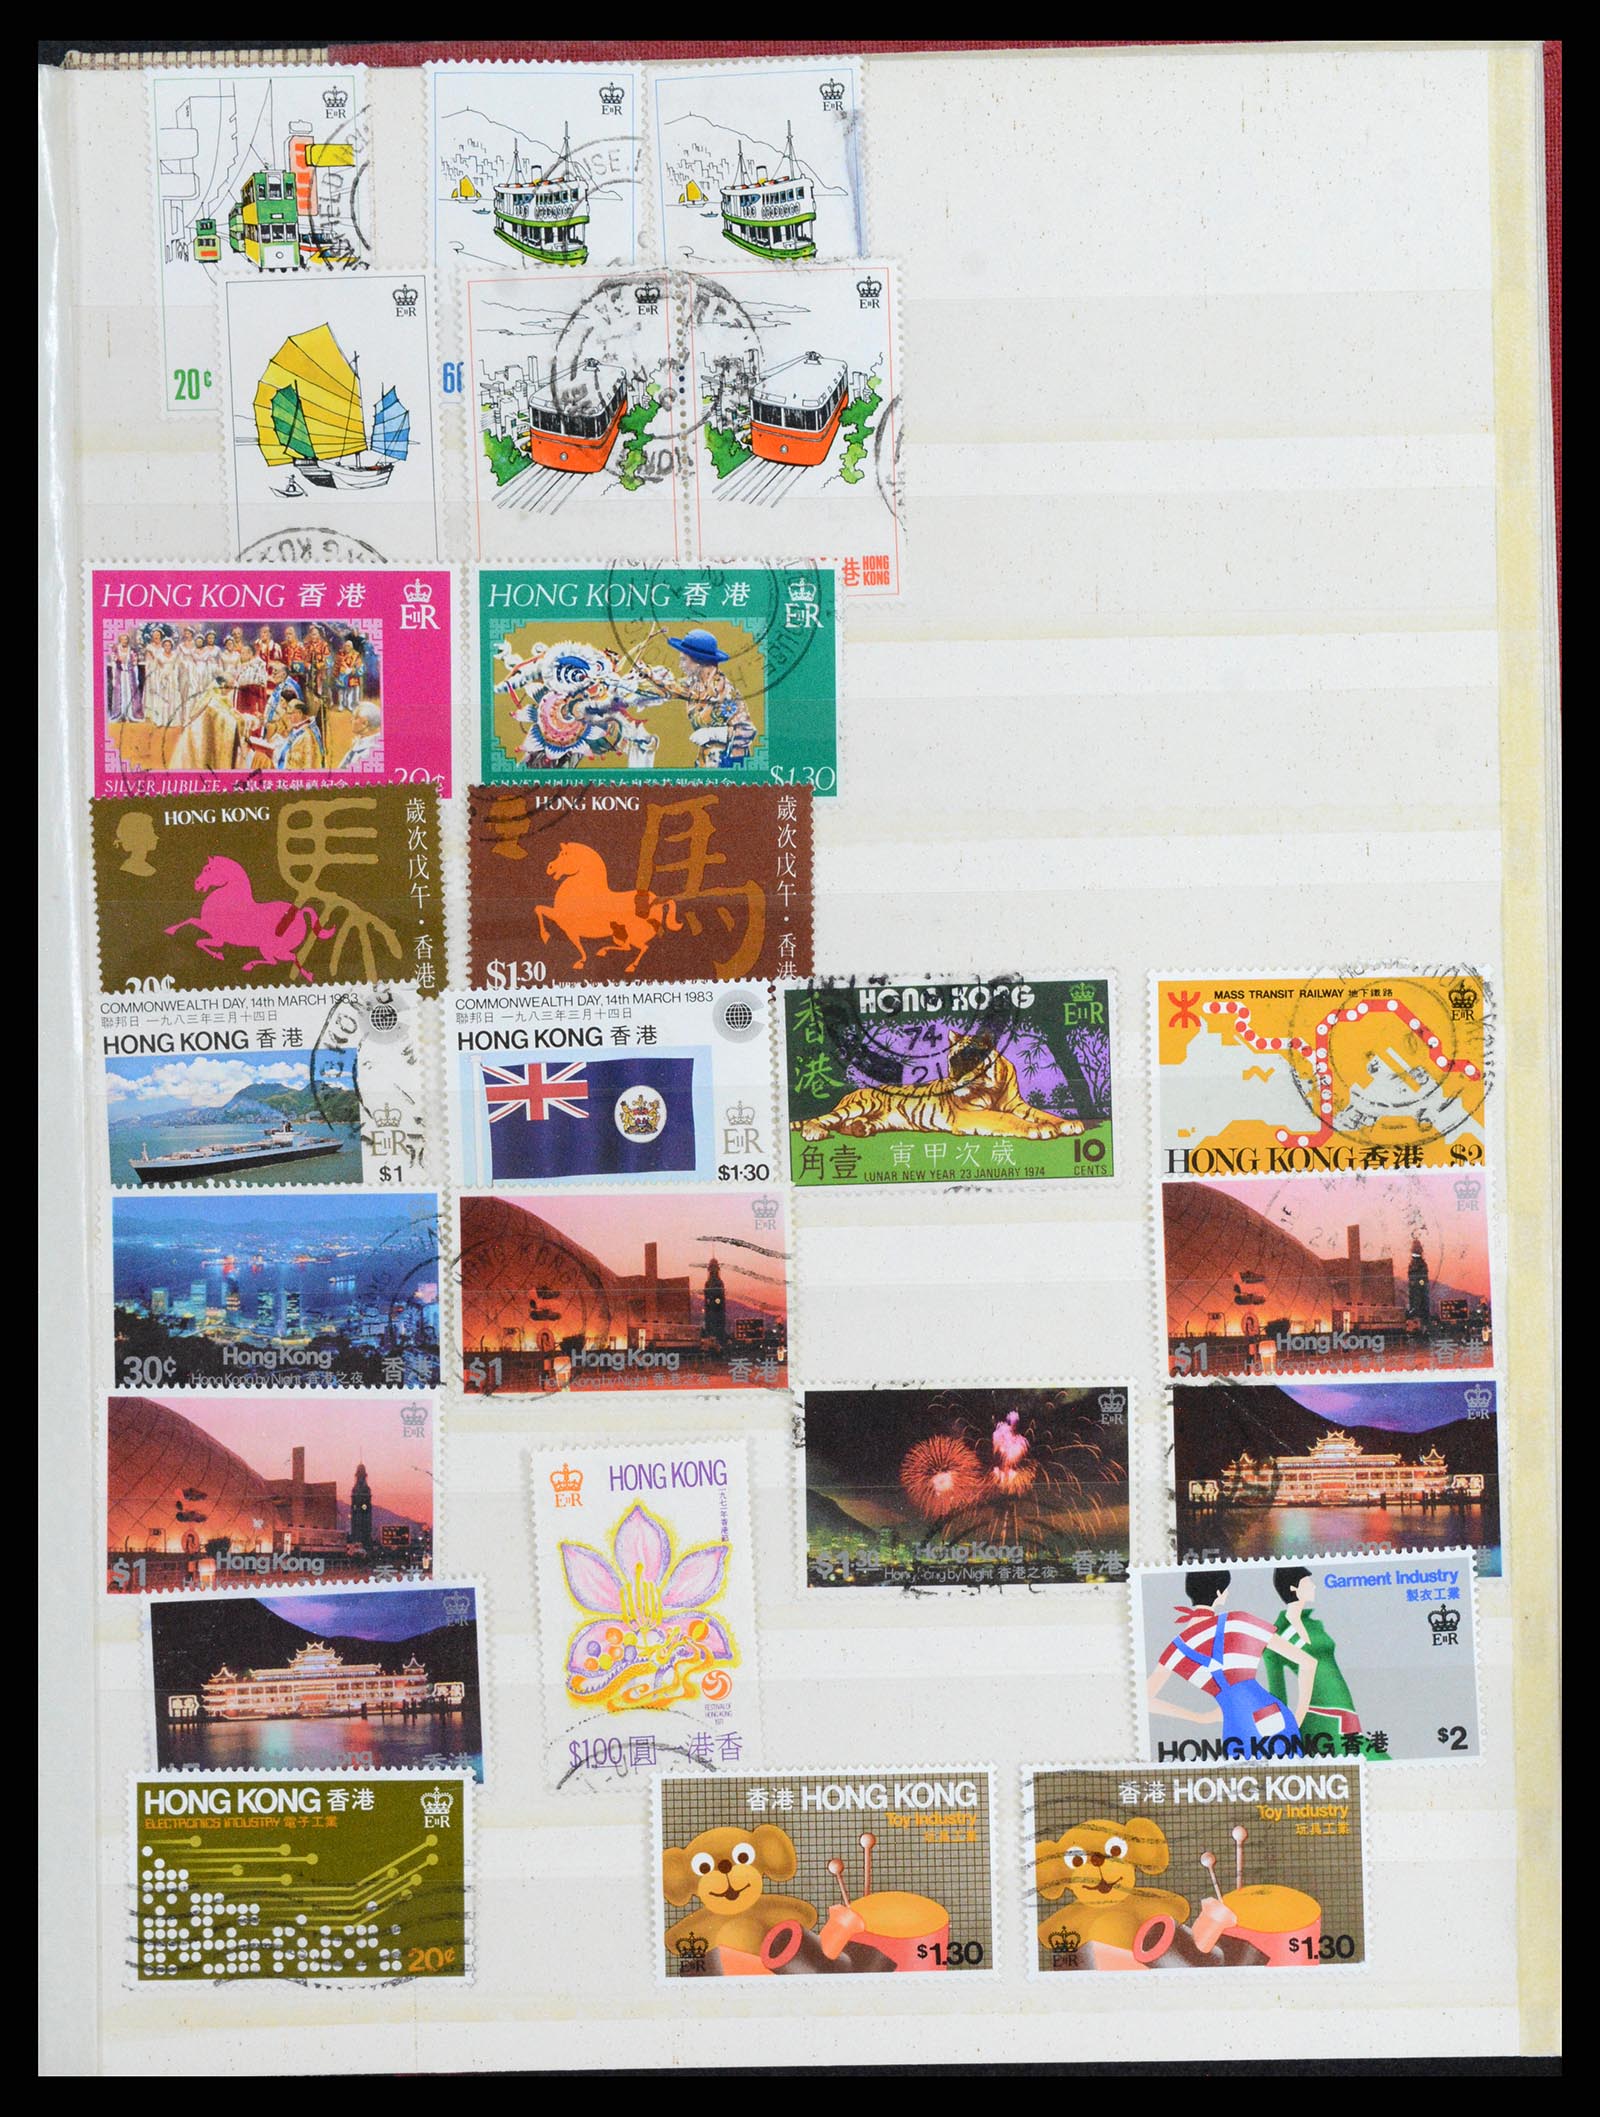 37358 031 - Stamp collection 37358 Hong Kong 1861-1997.